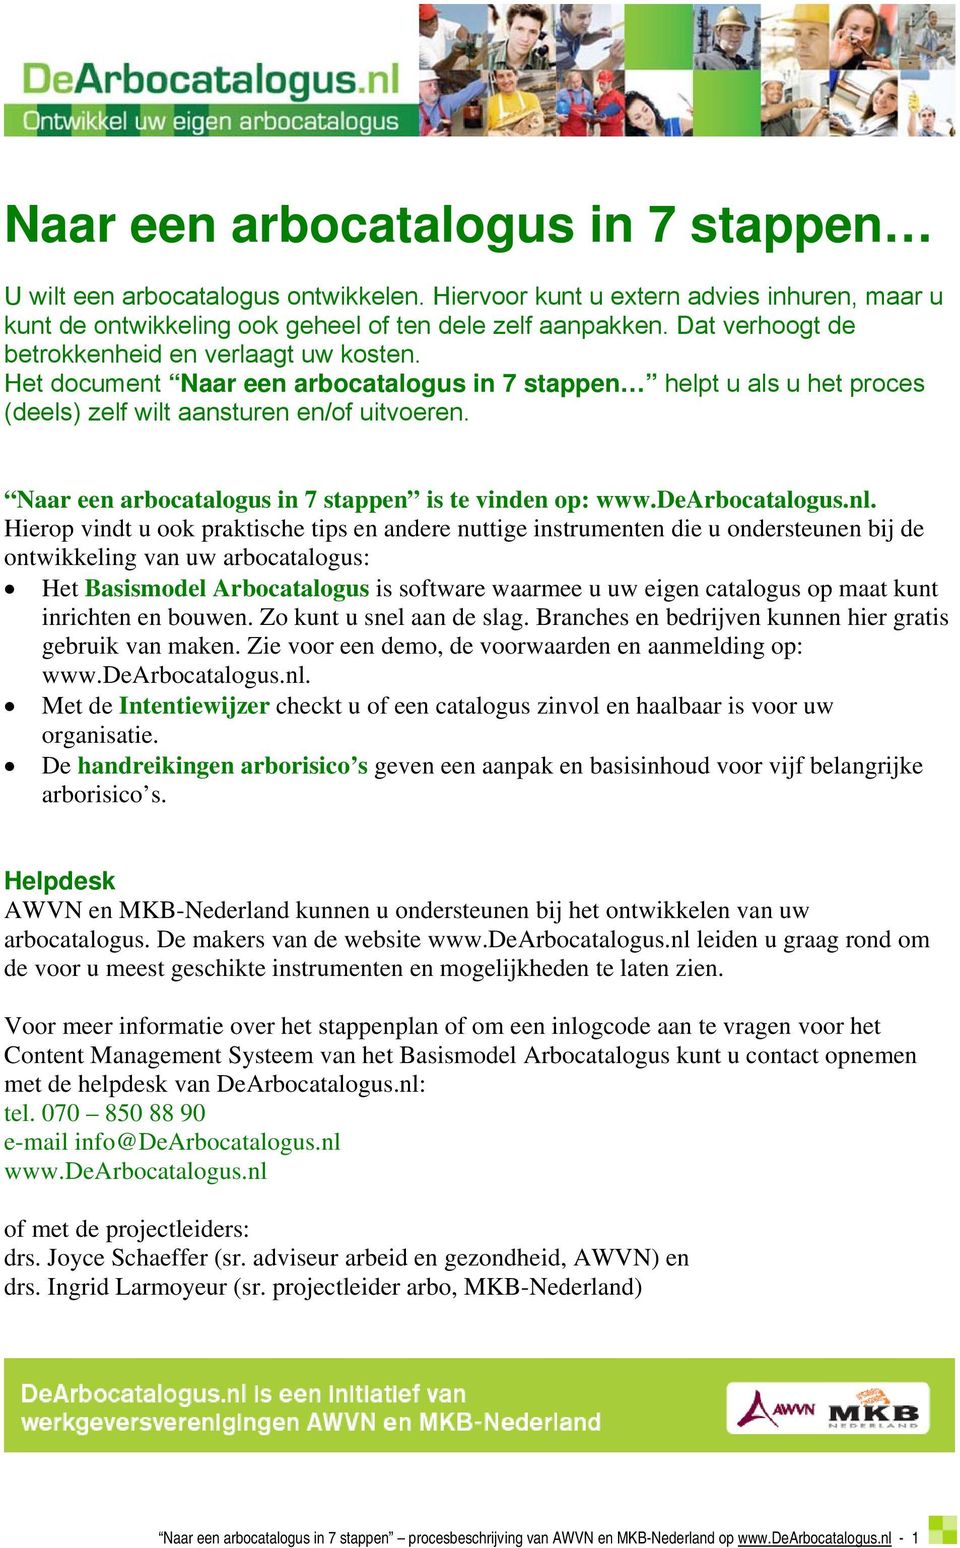 Naar een arbocatalogus in 7 stappen is te vinden op: www.dearbocatalogus.nl.